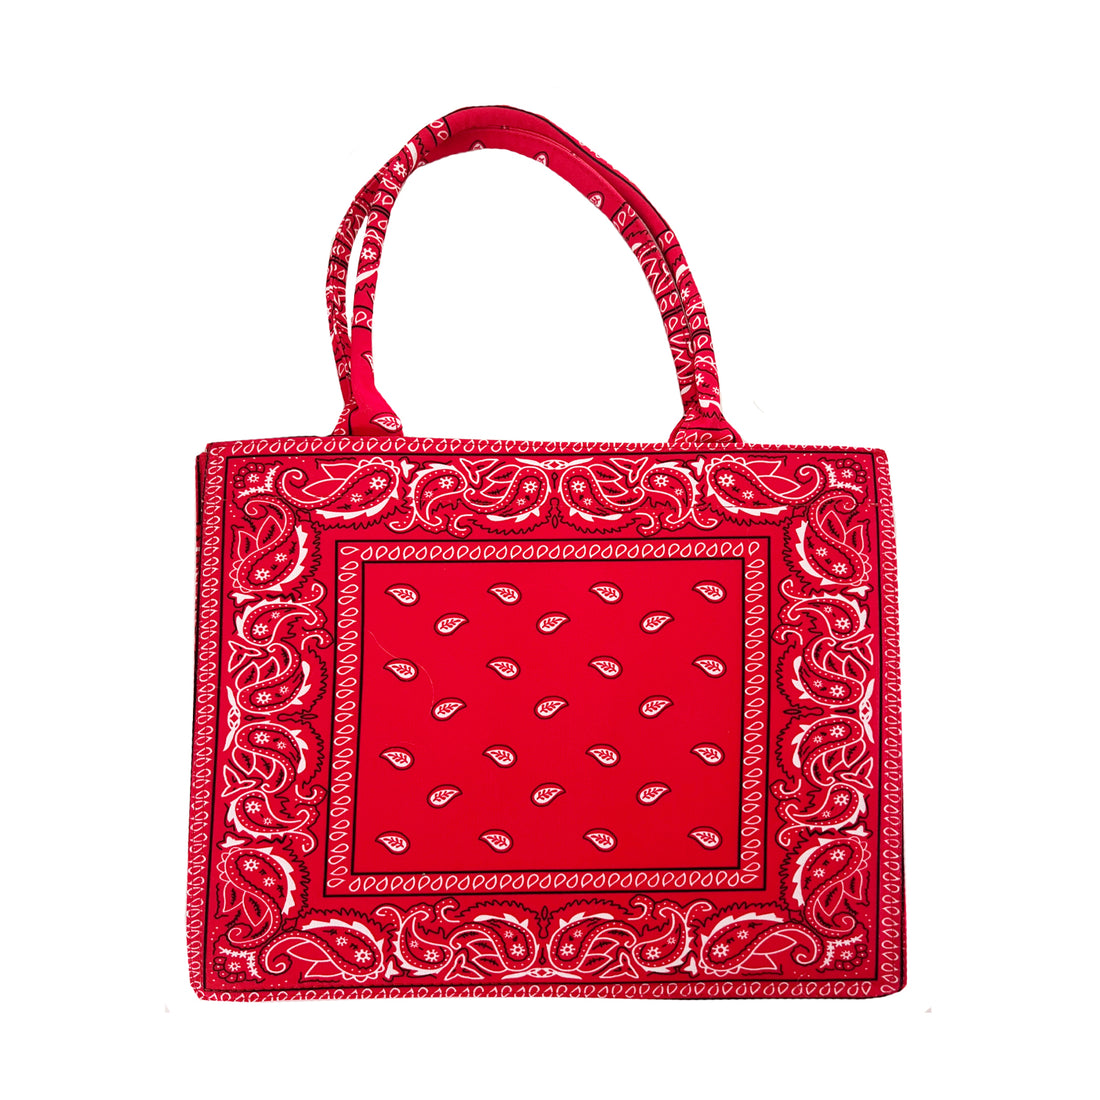 Grote shopper met rode en witte bandana print. De tas is open aan de bovenkant en is perfect te gebruiken als boodschappen, strand en/of weekendtas. De tas is gemaakt van textiel. Rode bandana print shopper tas.